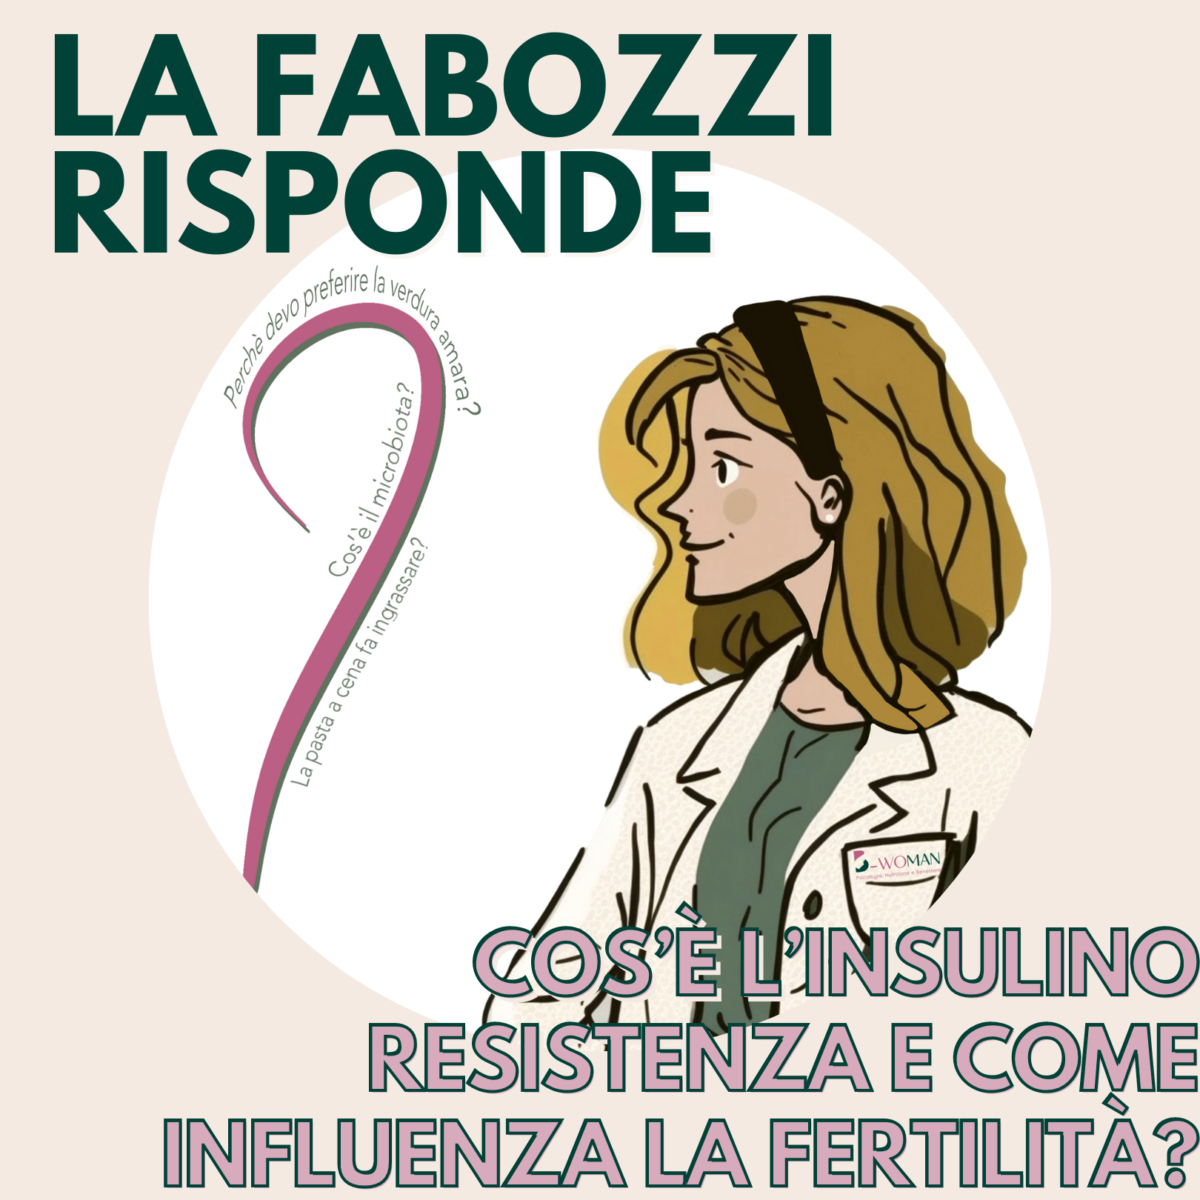 Cose-linsulinoresistenza-e-come-puo-influenzare-la-fertilita-Risponde-la-Dr.ssa-Gemma-Fabozzi-1200x1200.png